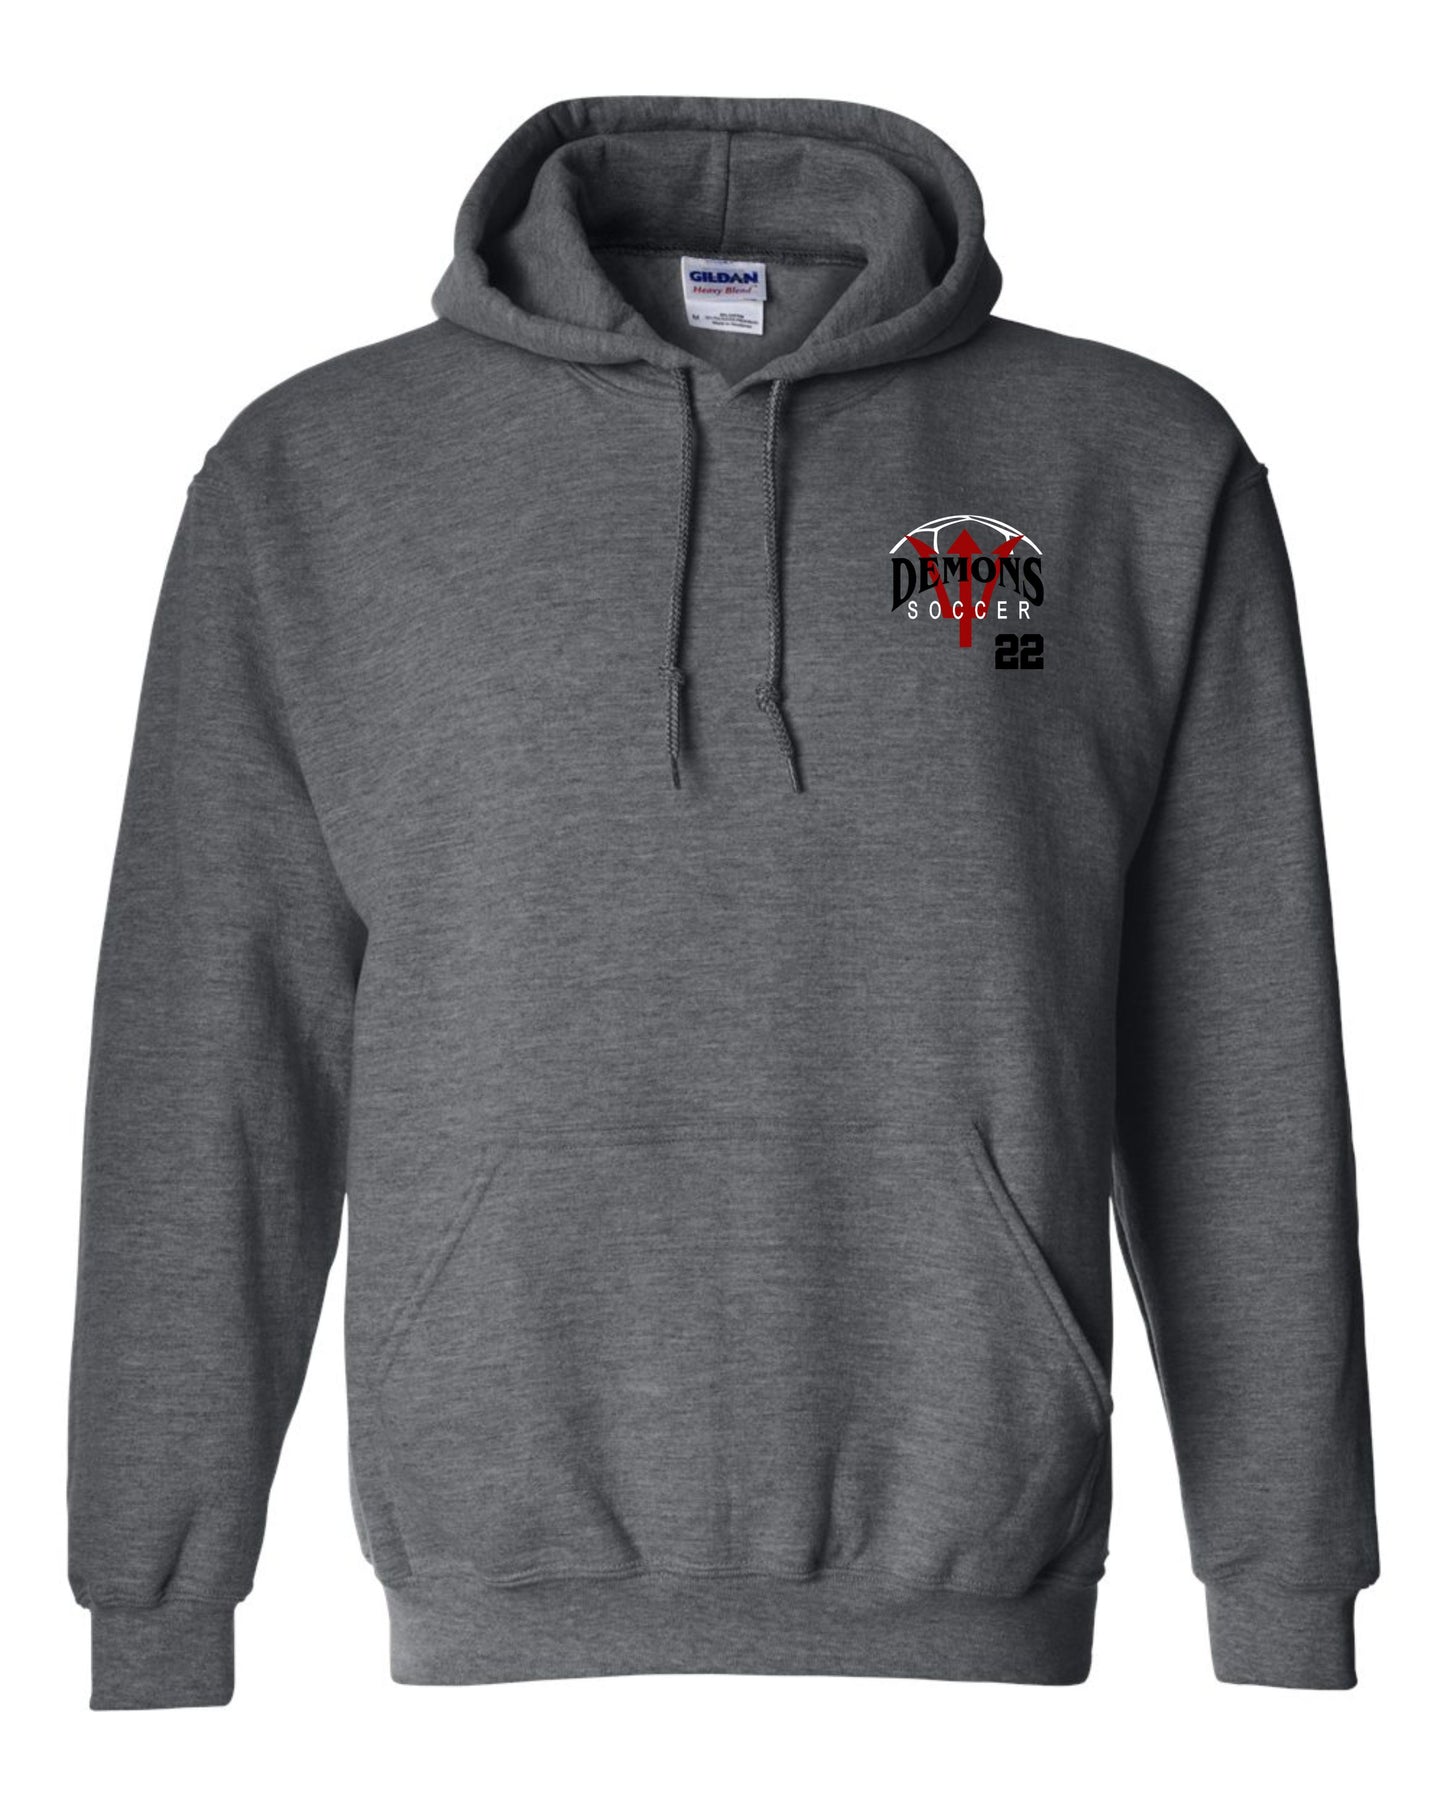 Soccer hoodie, team apparel